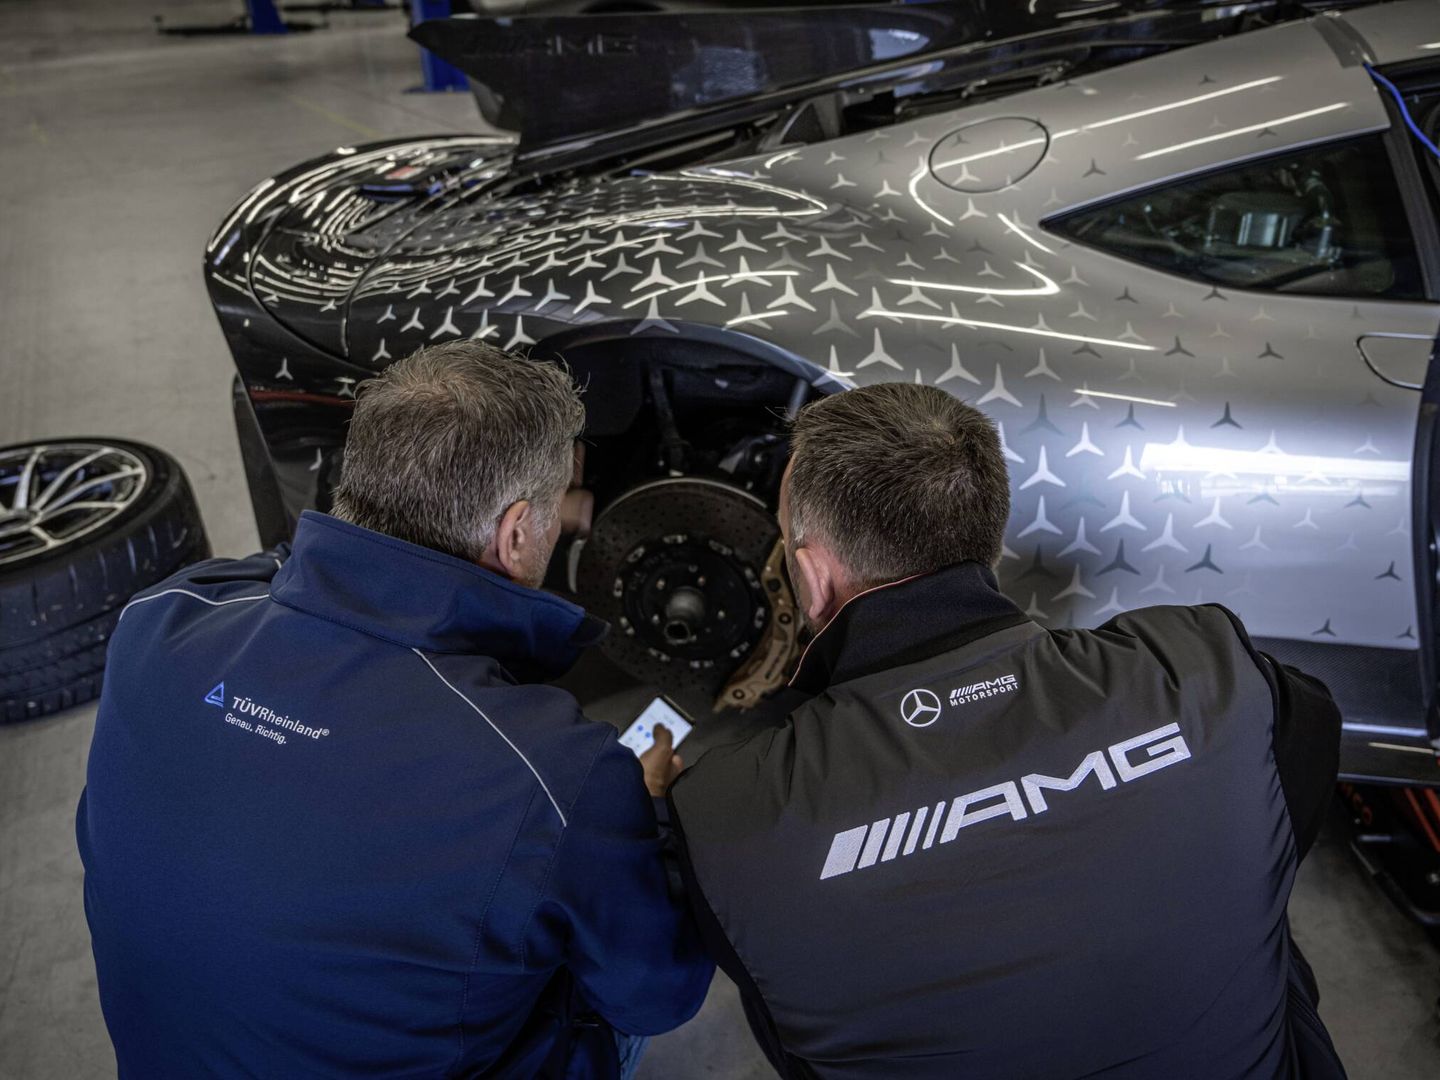 El One equipa neumáticos específicamente desarrollados por Michelin. Y discos de freno cerámicos de AMG.